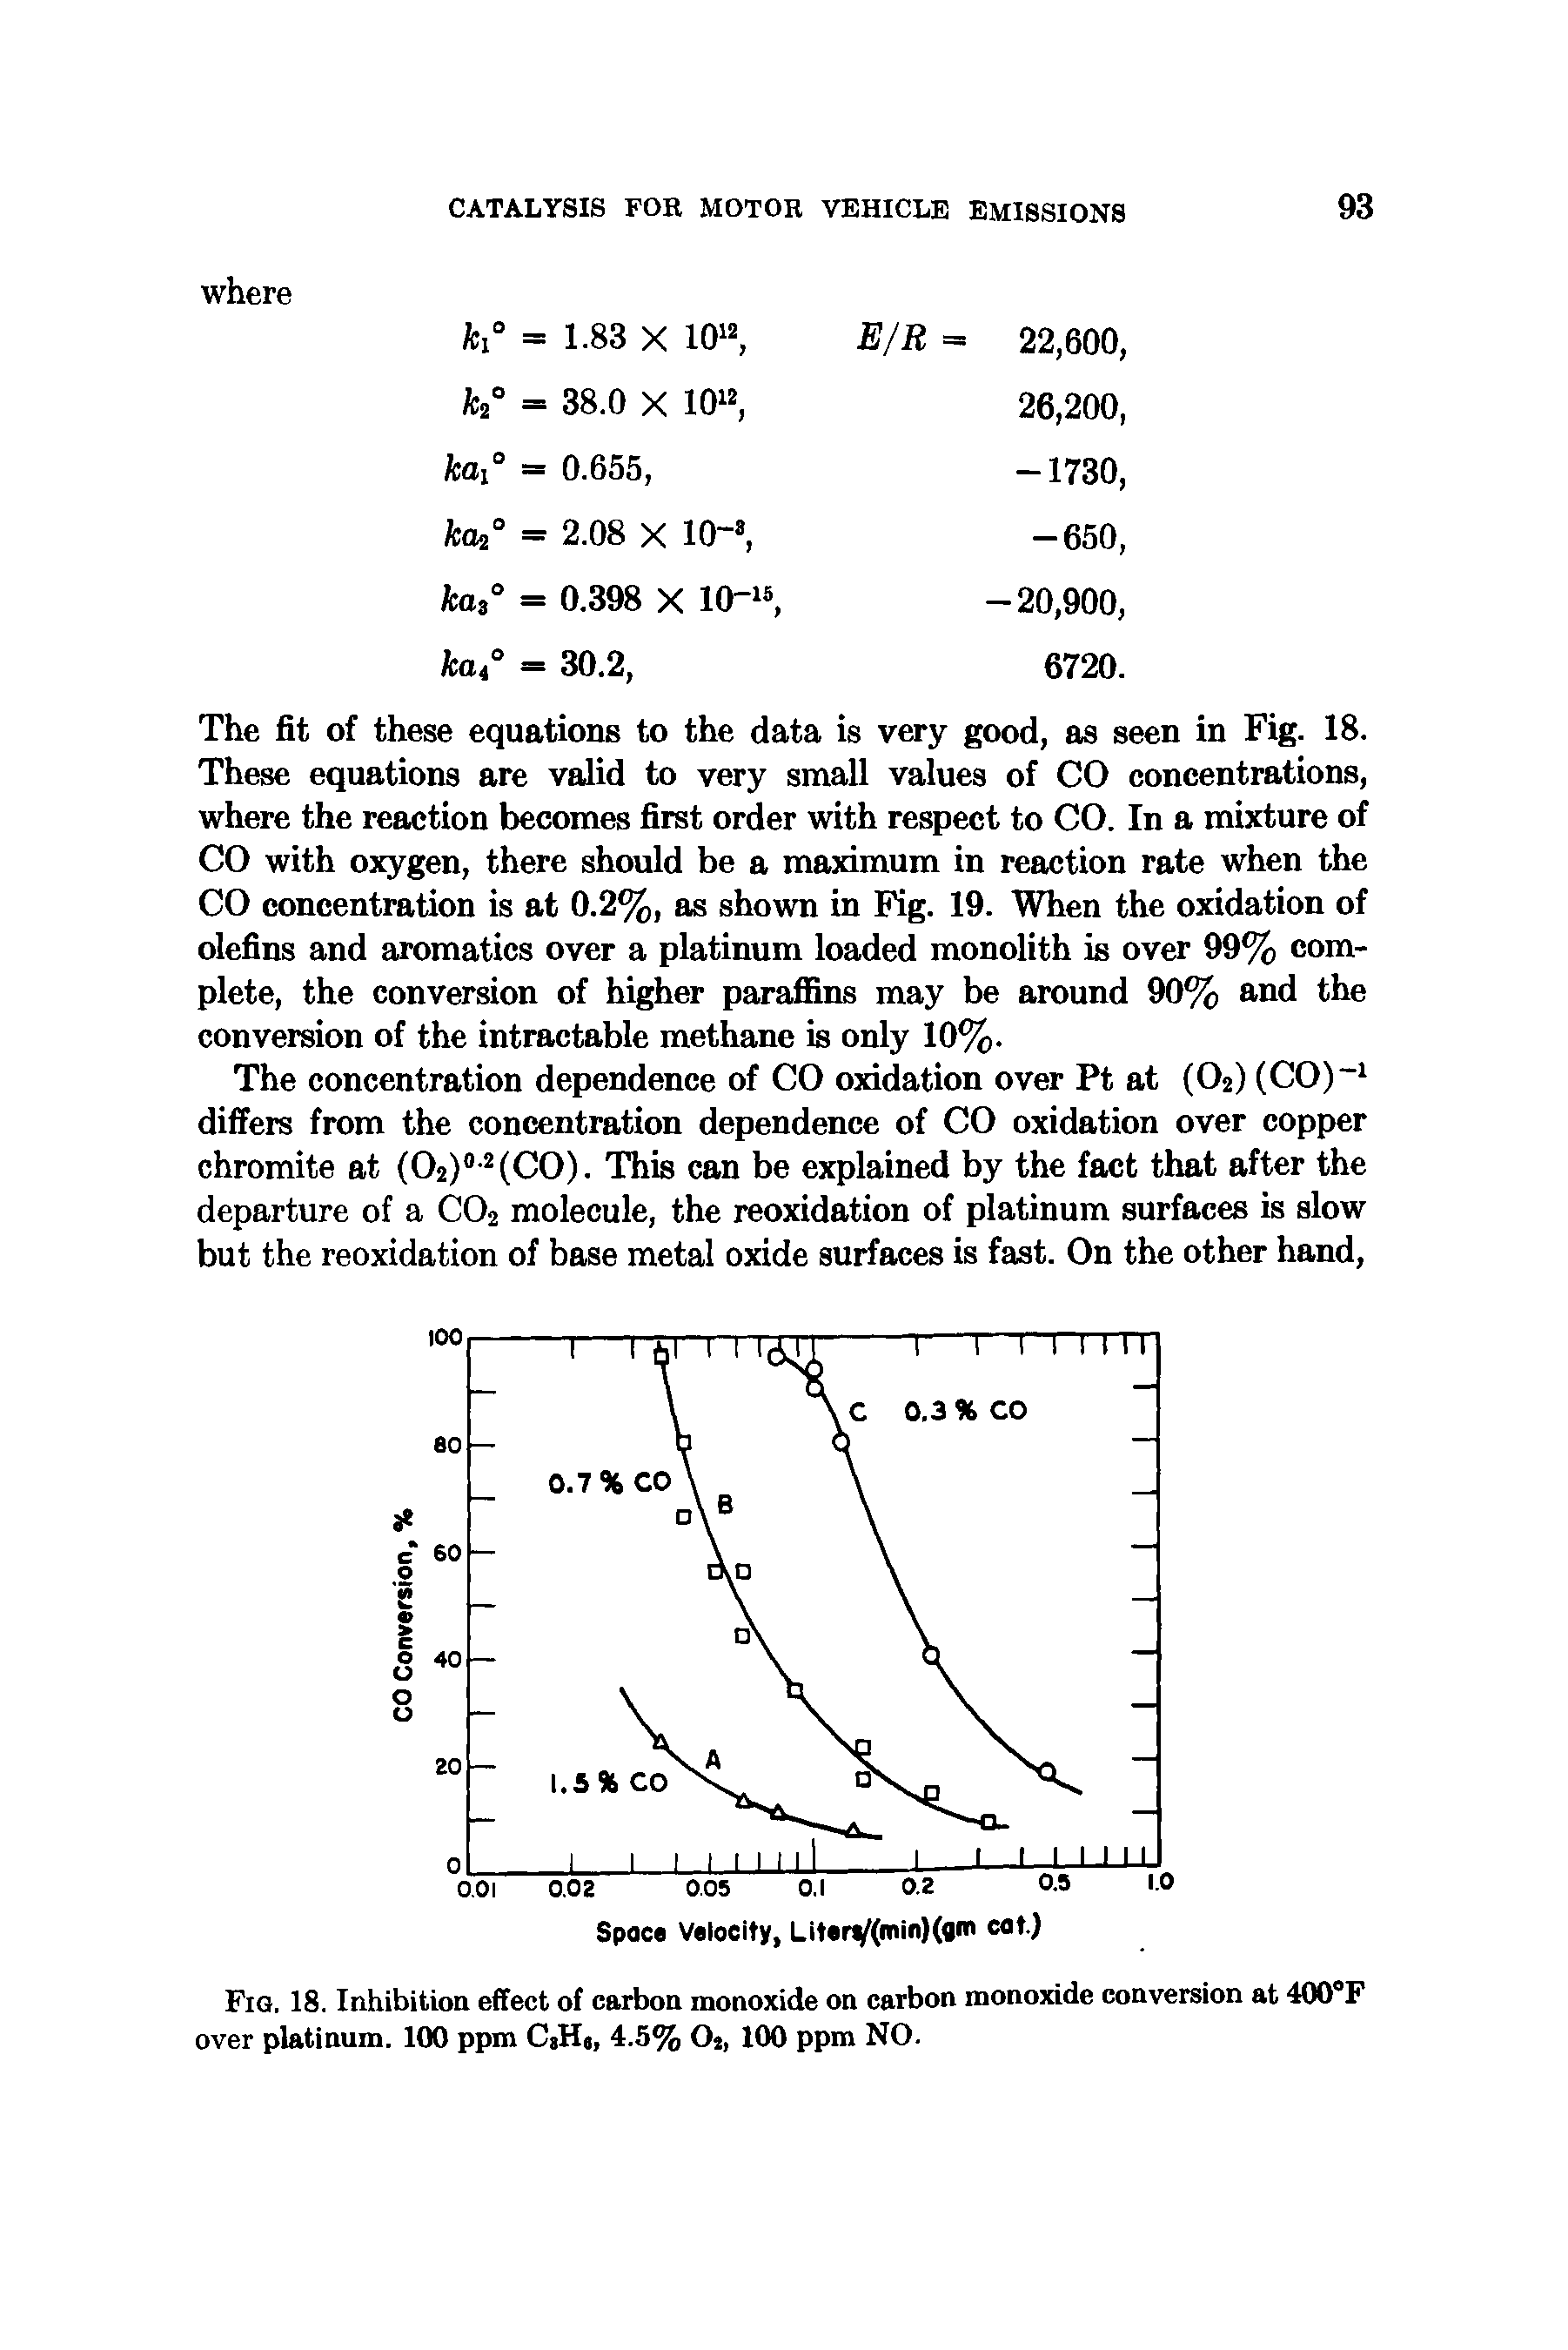 Fig. 18. Inhibition effect of carbon monoxide on carbon monoxide conversion at 400°F over platinum. 100 ppm CaH8> 4.5% 02, 100 ppm NO.